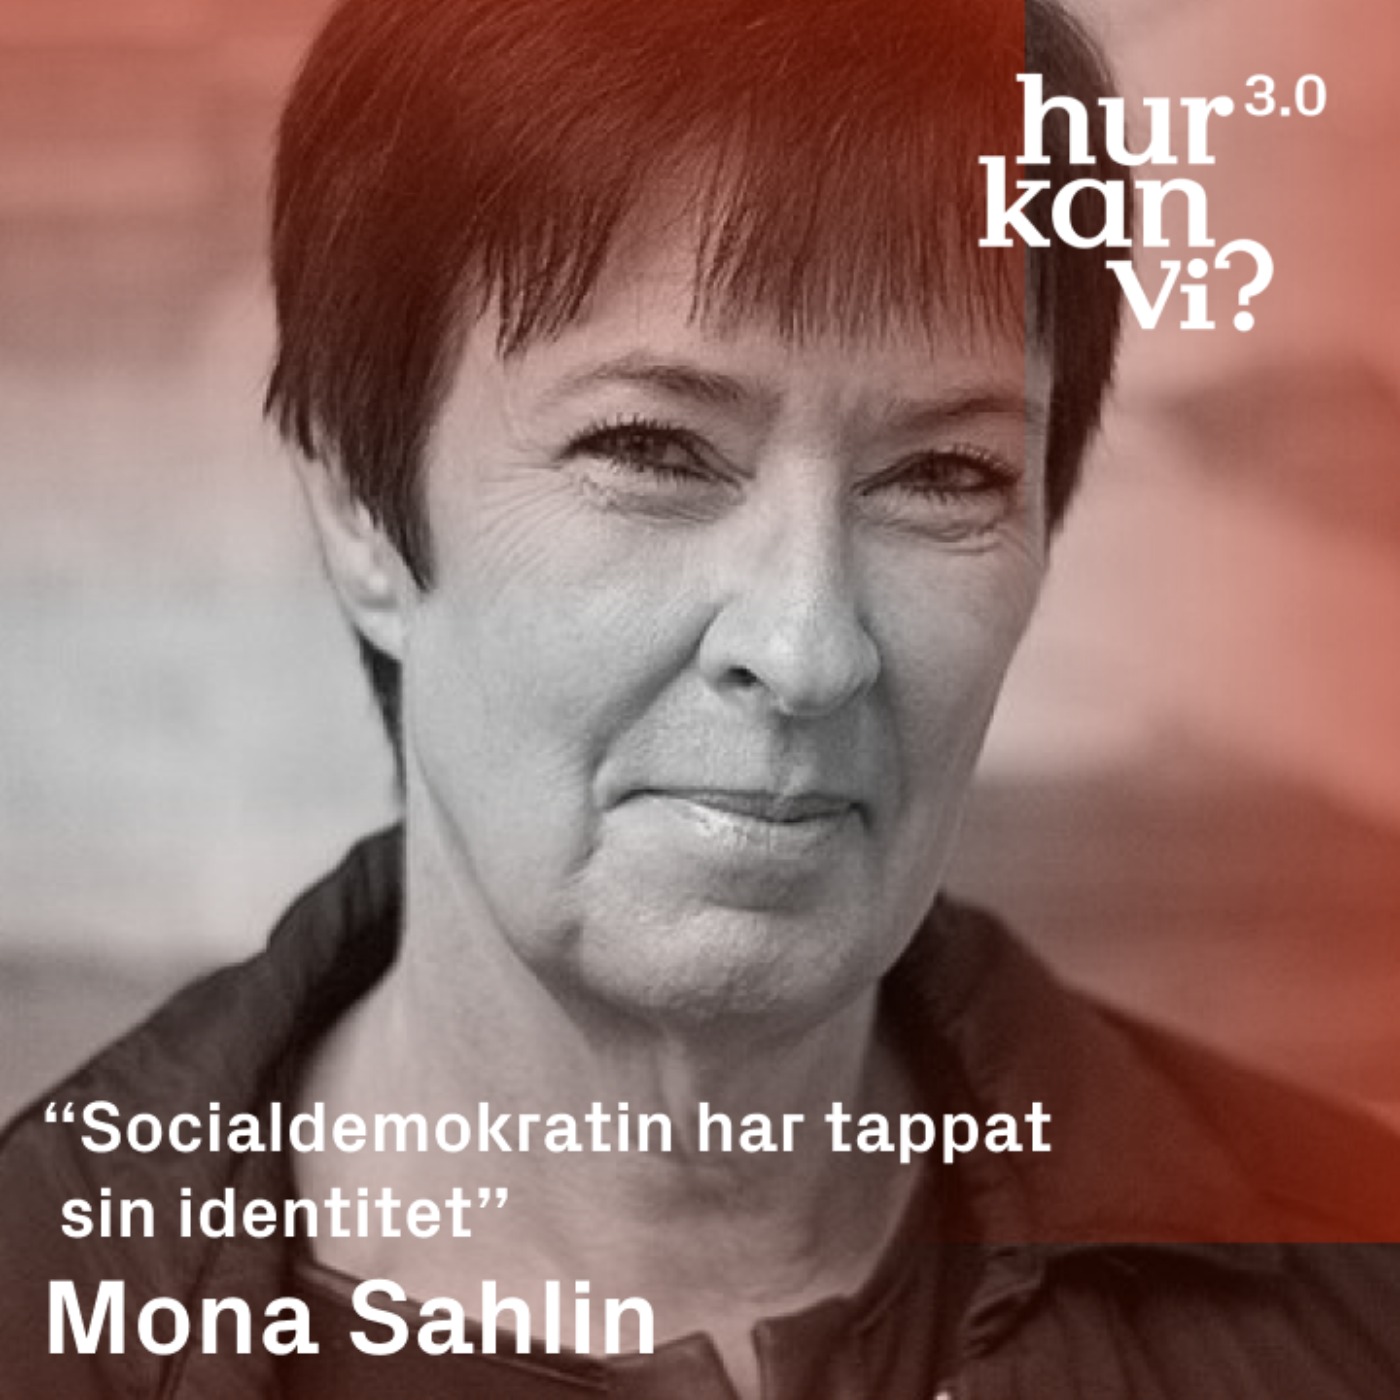 Mona Sahlin - Q&A